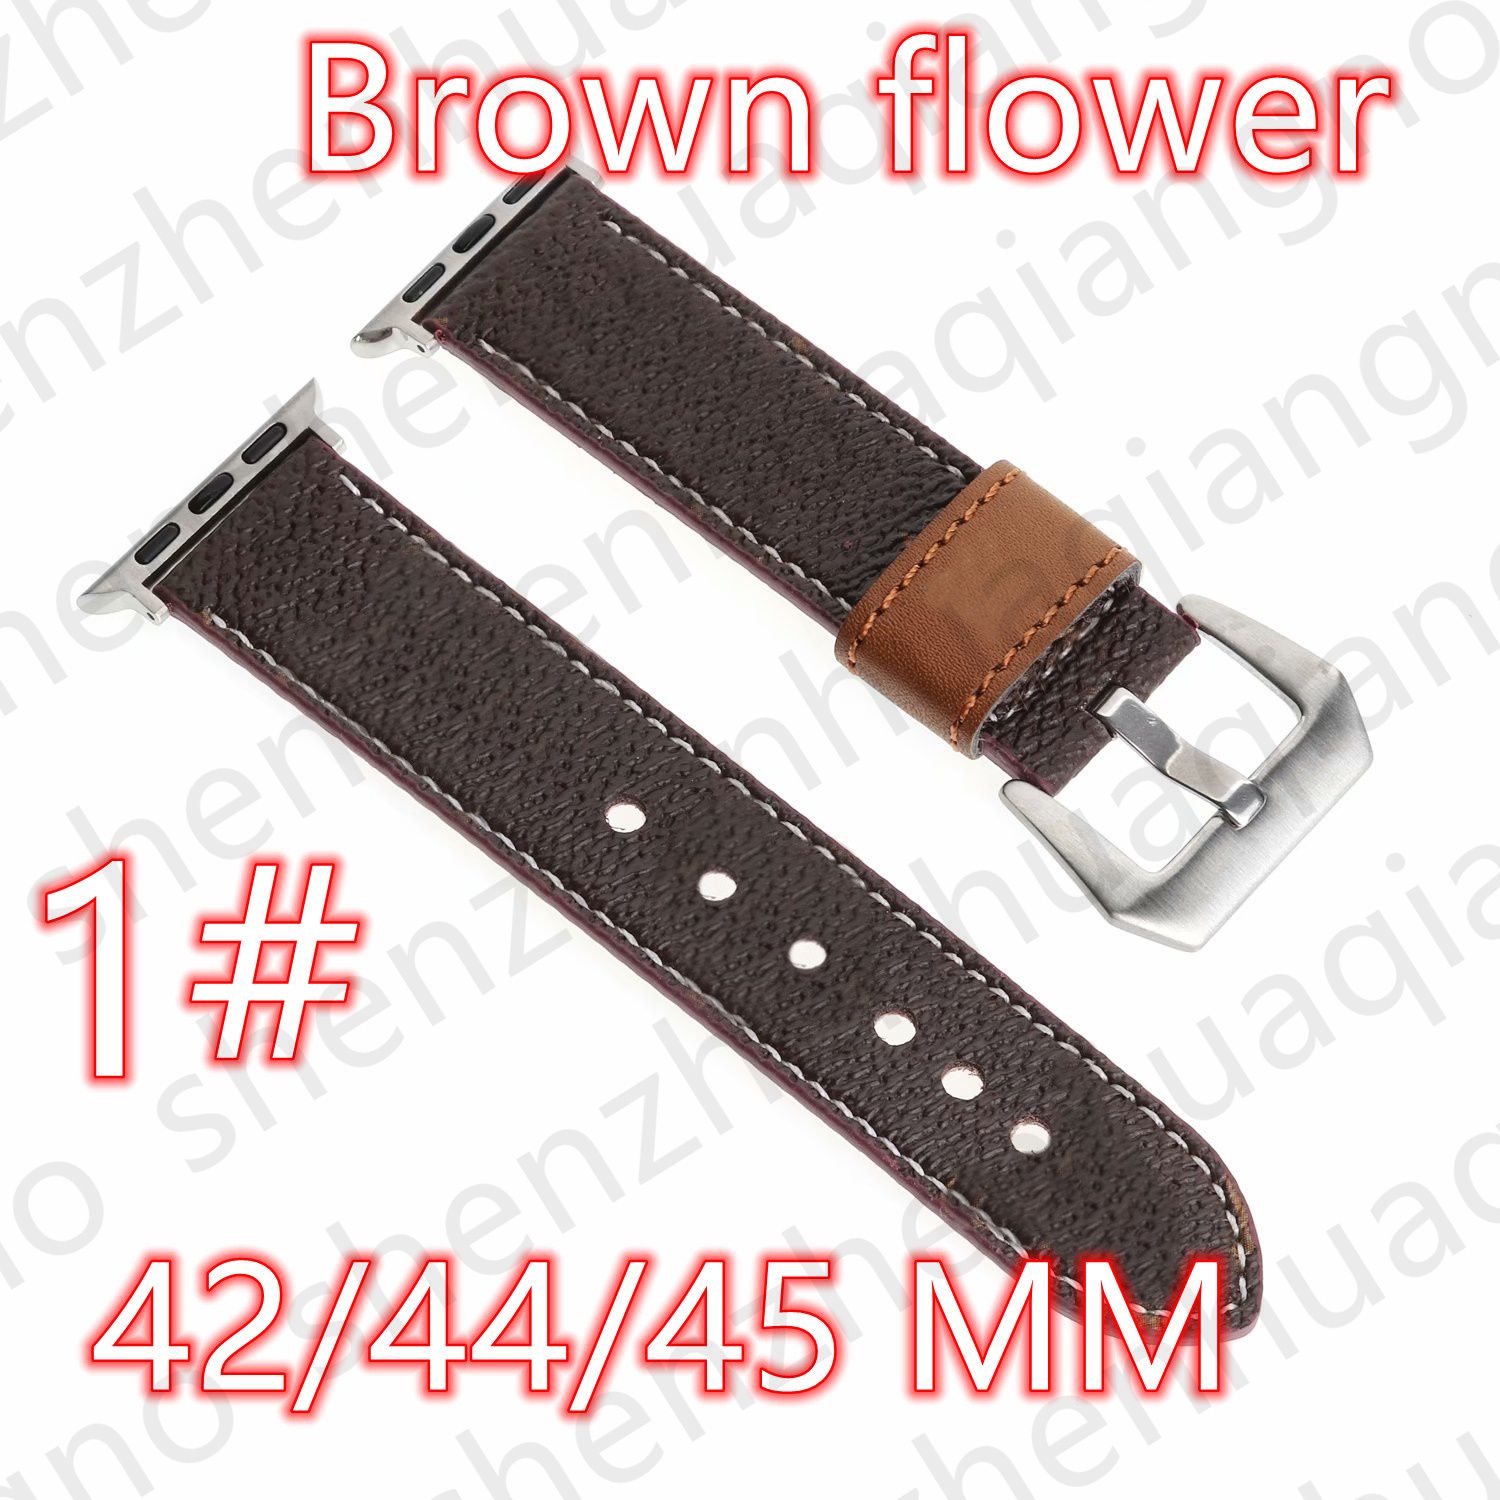 1 # 42/44/45/49 mm Brown Flower V logo